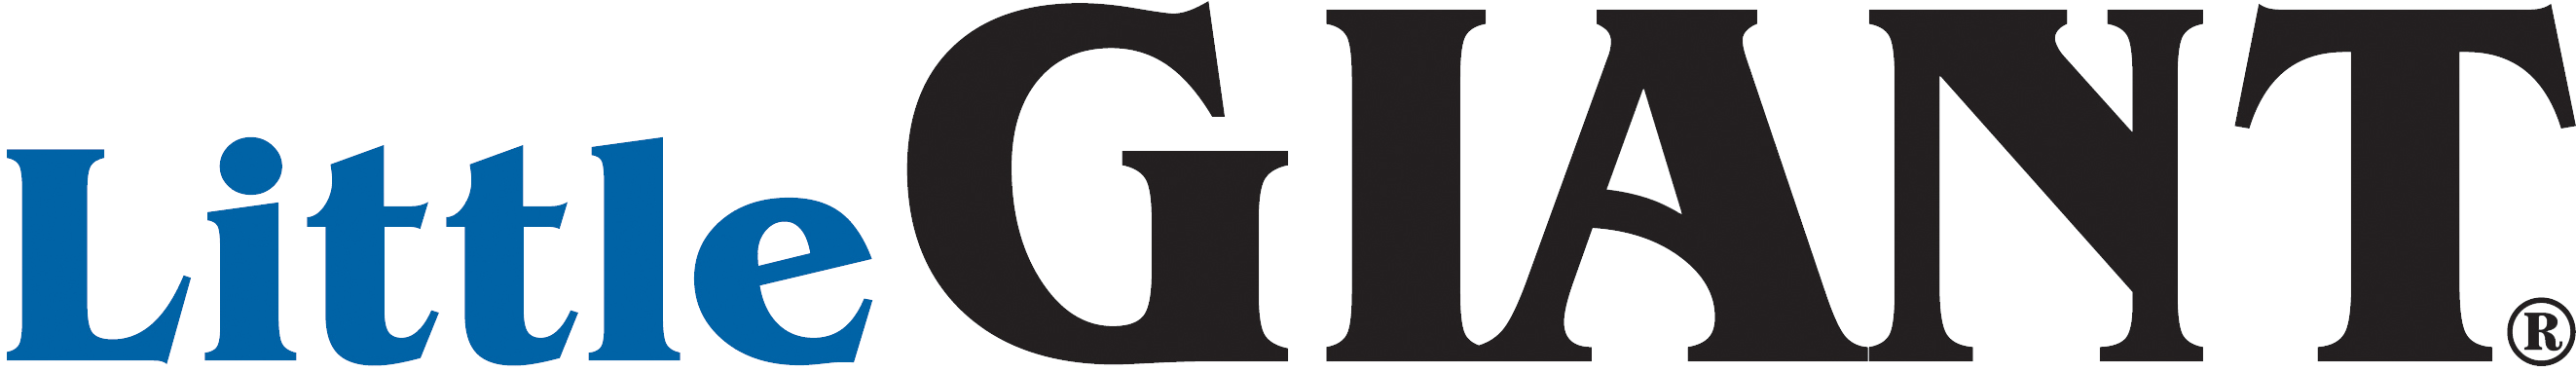 Little Giant Pumps Logo (2700x413)